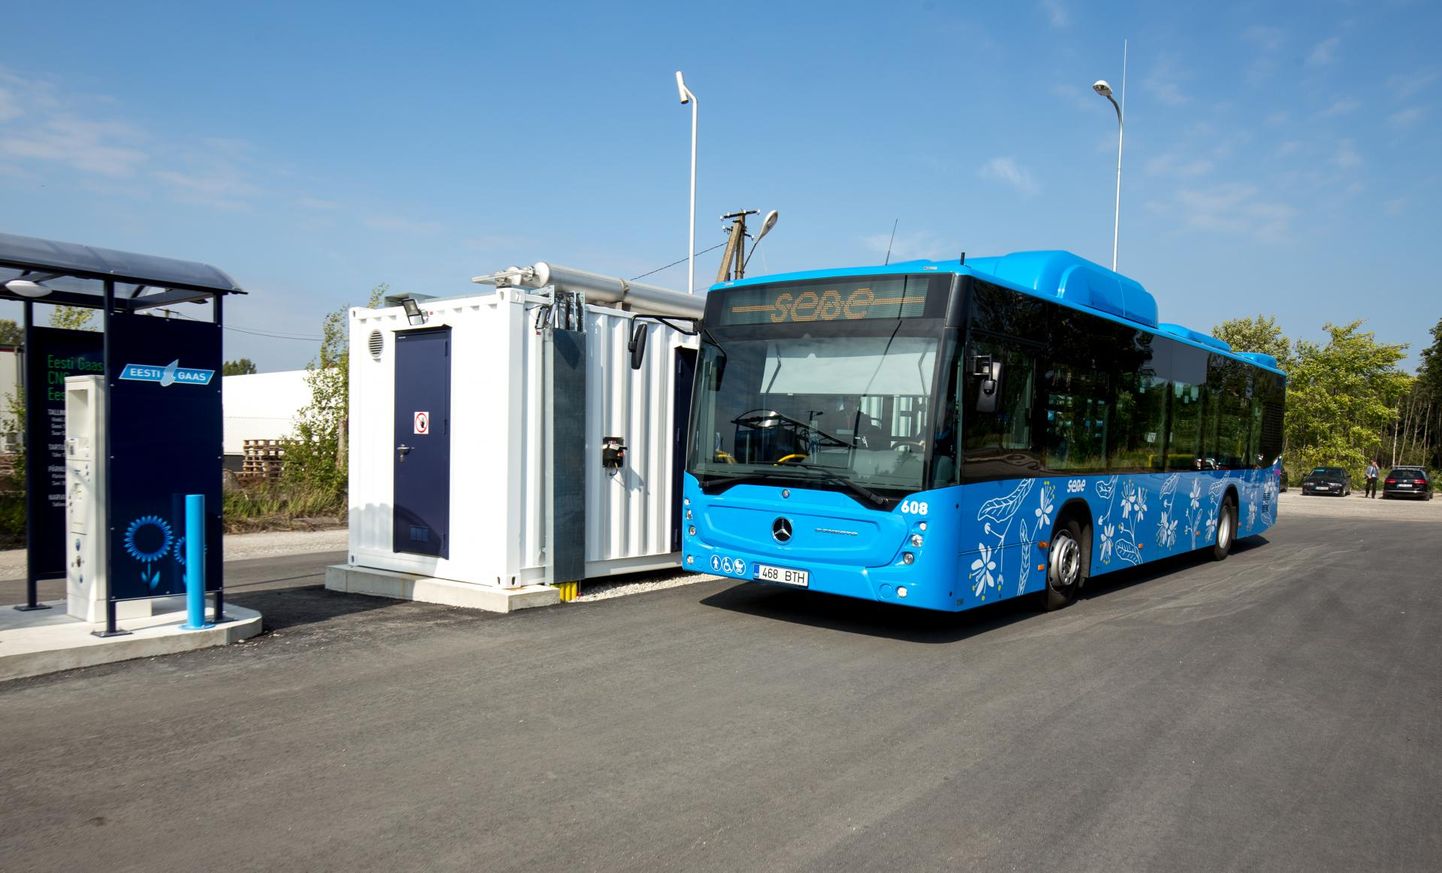 Pärnu 28 uuest linnabussist 18 sõidab praegu surugaasiga, aga 1. maist lähevad need üle keskkonnahoidlikule rohegaasile.